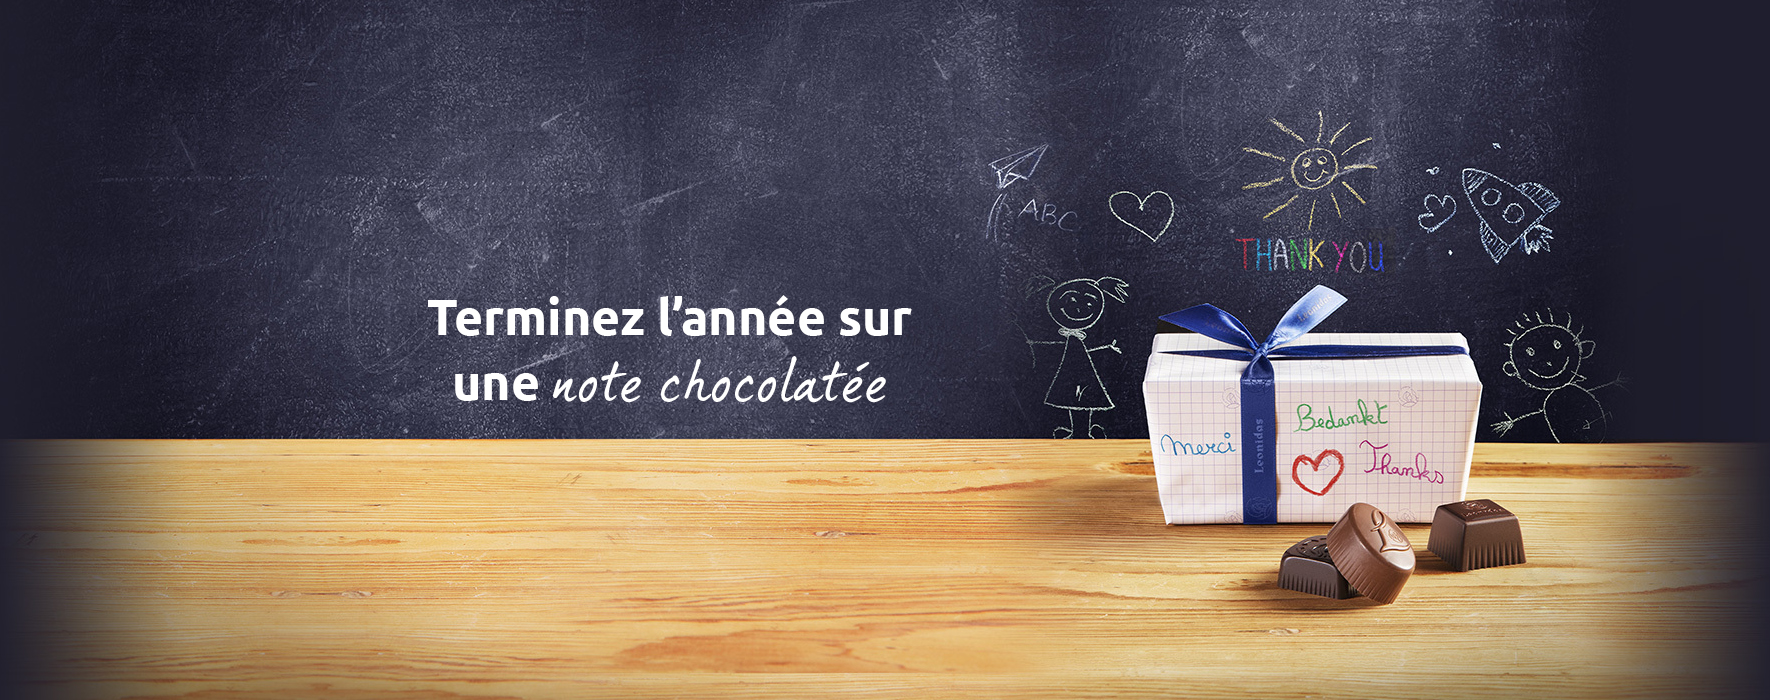 Terminez l'année sur une note chocolatée | Webshop Leonidas